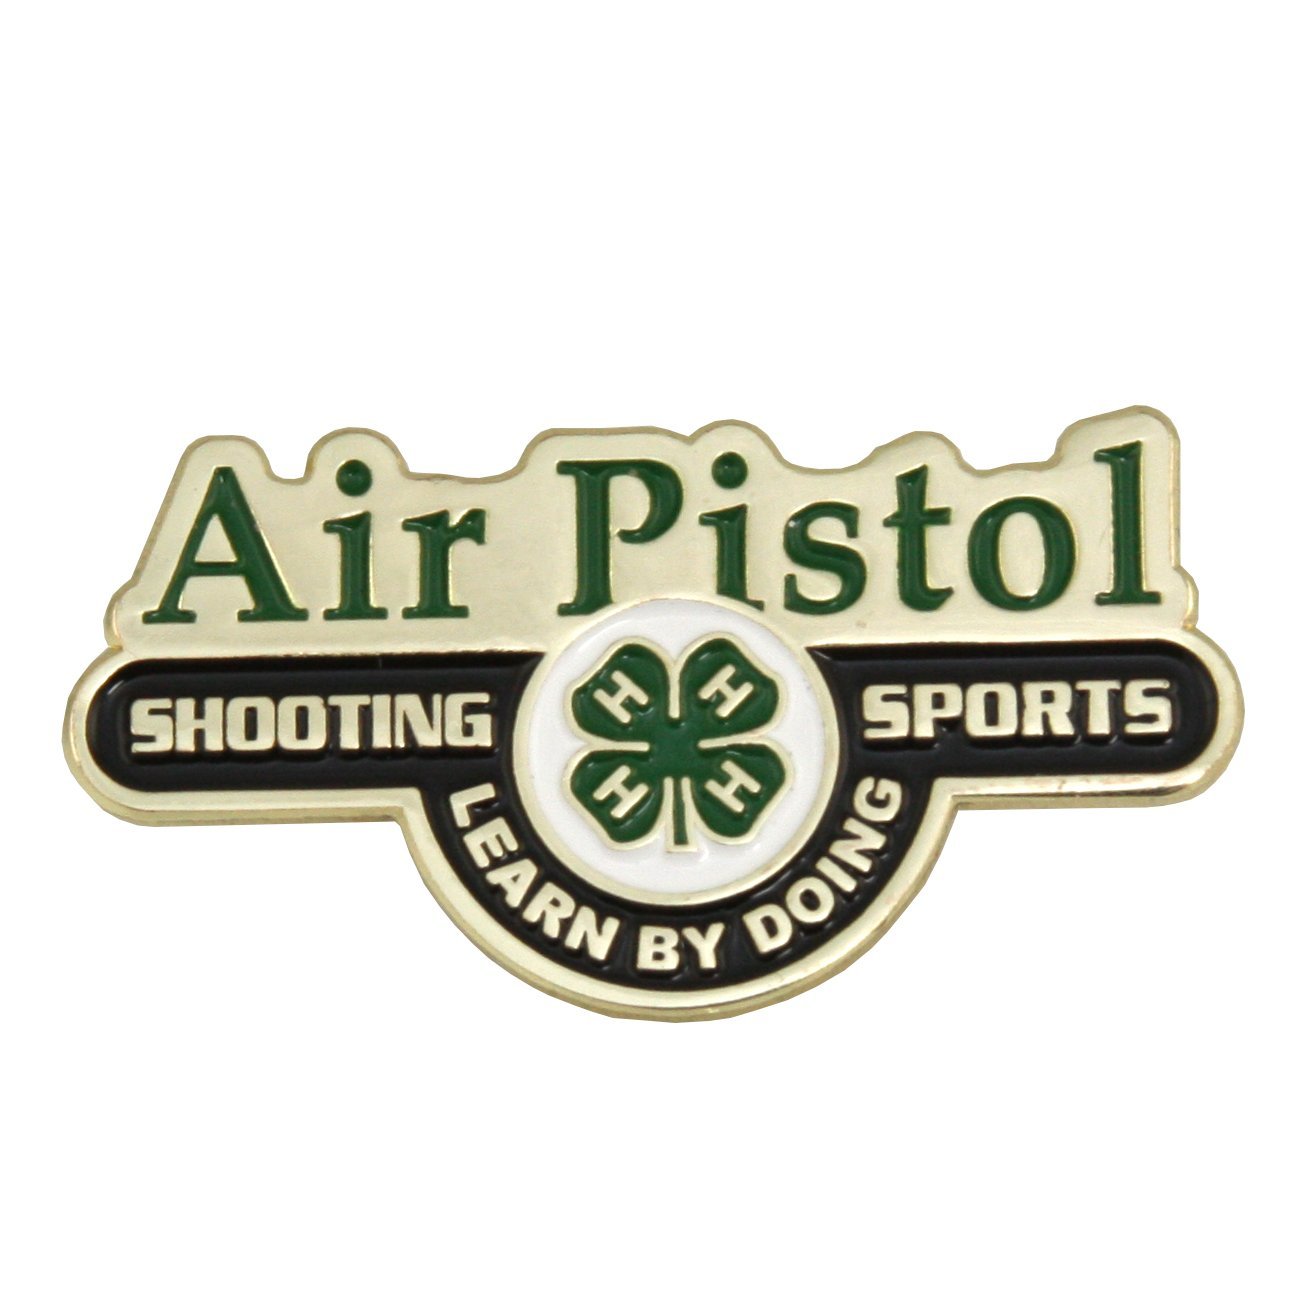 Pin on Sports Logos